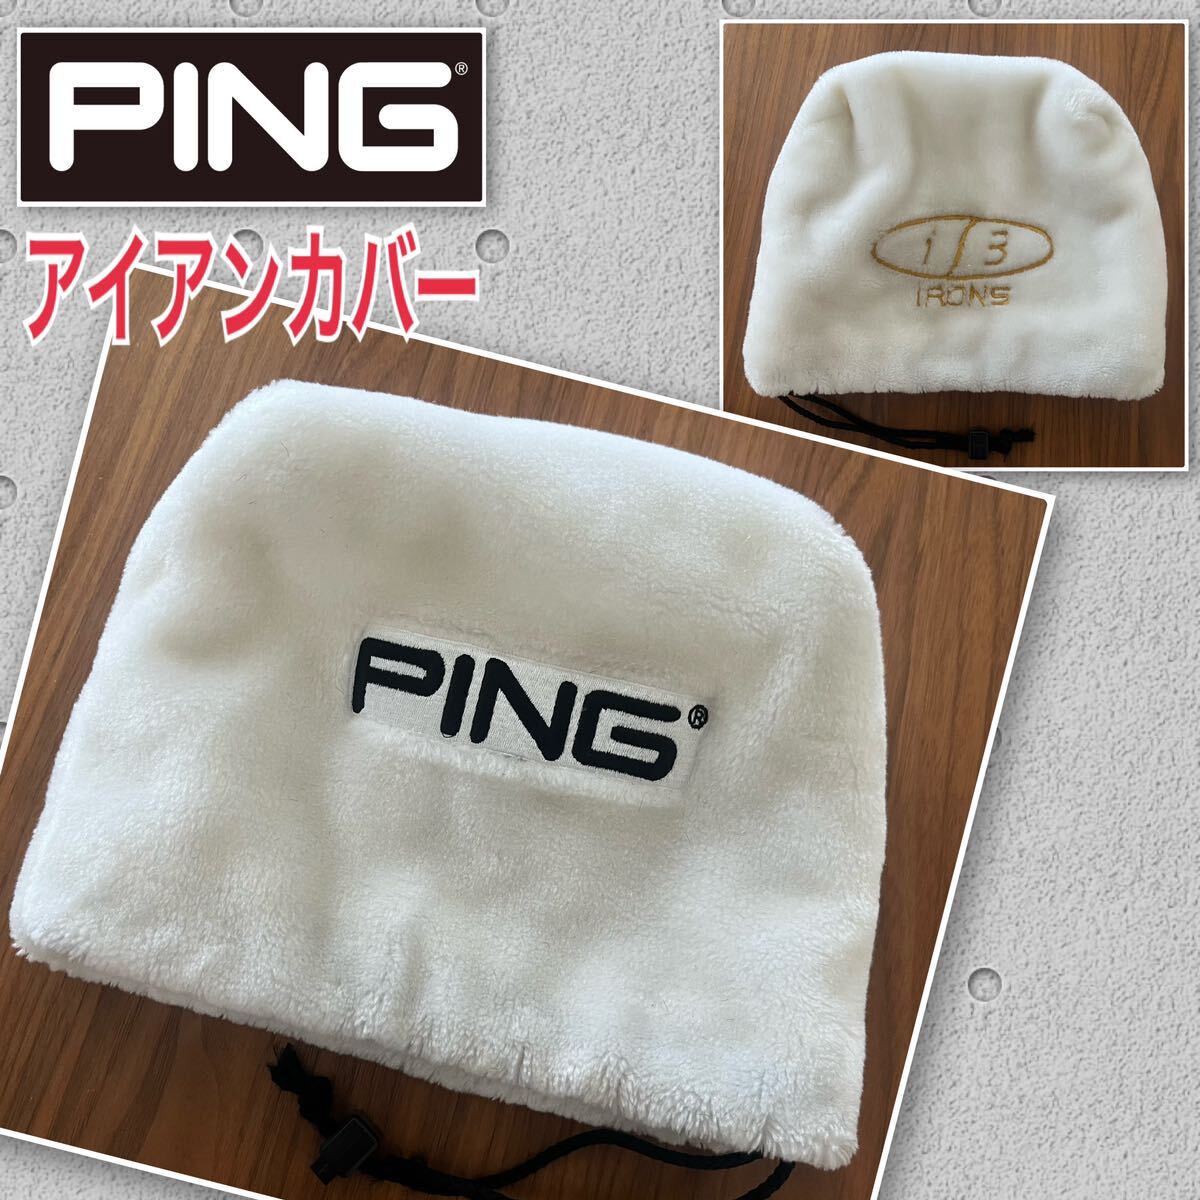 PING ピン i3 アイアンカバー ホワイト アイアン用カバー 白 希少品 レア やや傷や汚れありの画像1